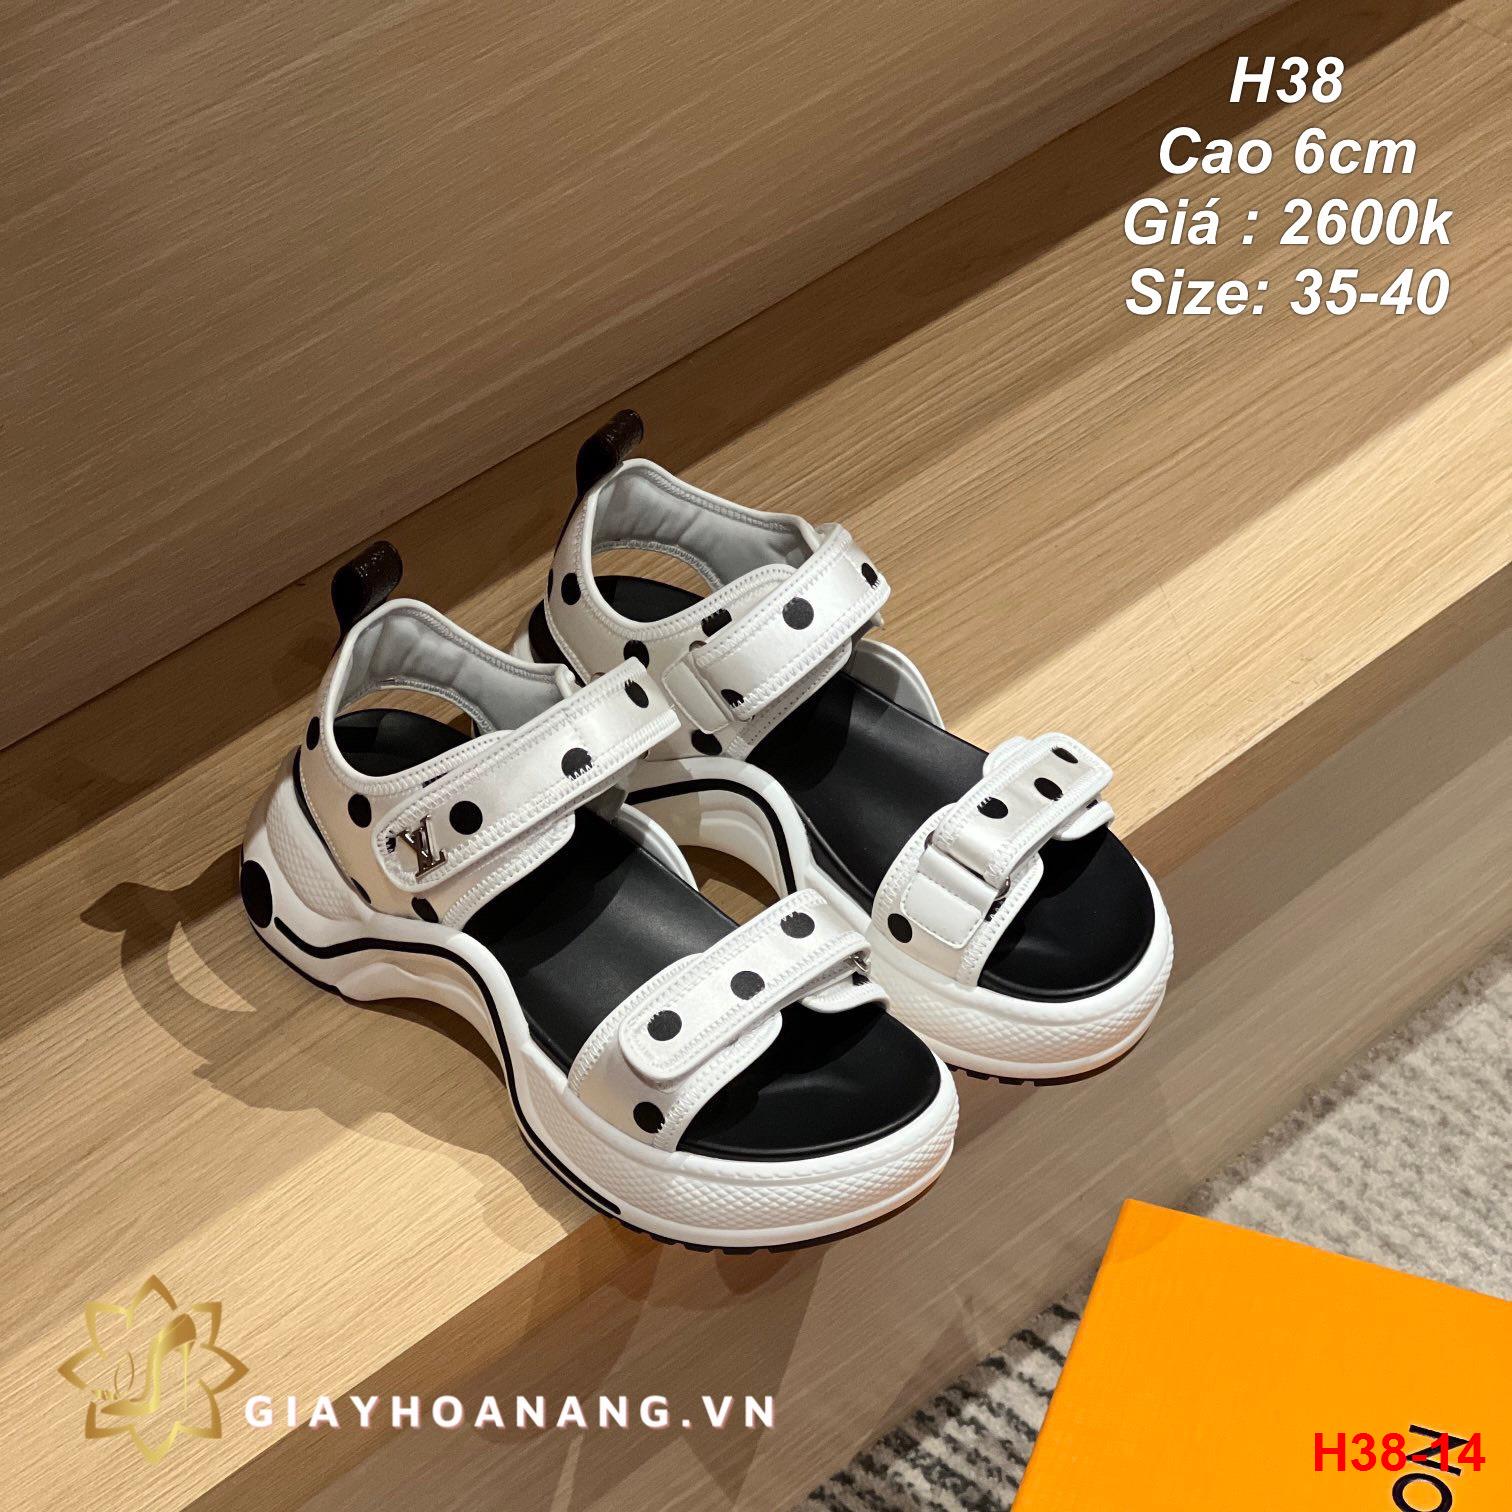 H38-14 Louis Vuitton sandal cao 6cm siêu cấp